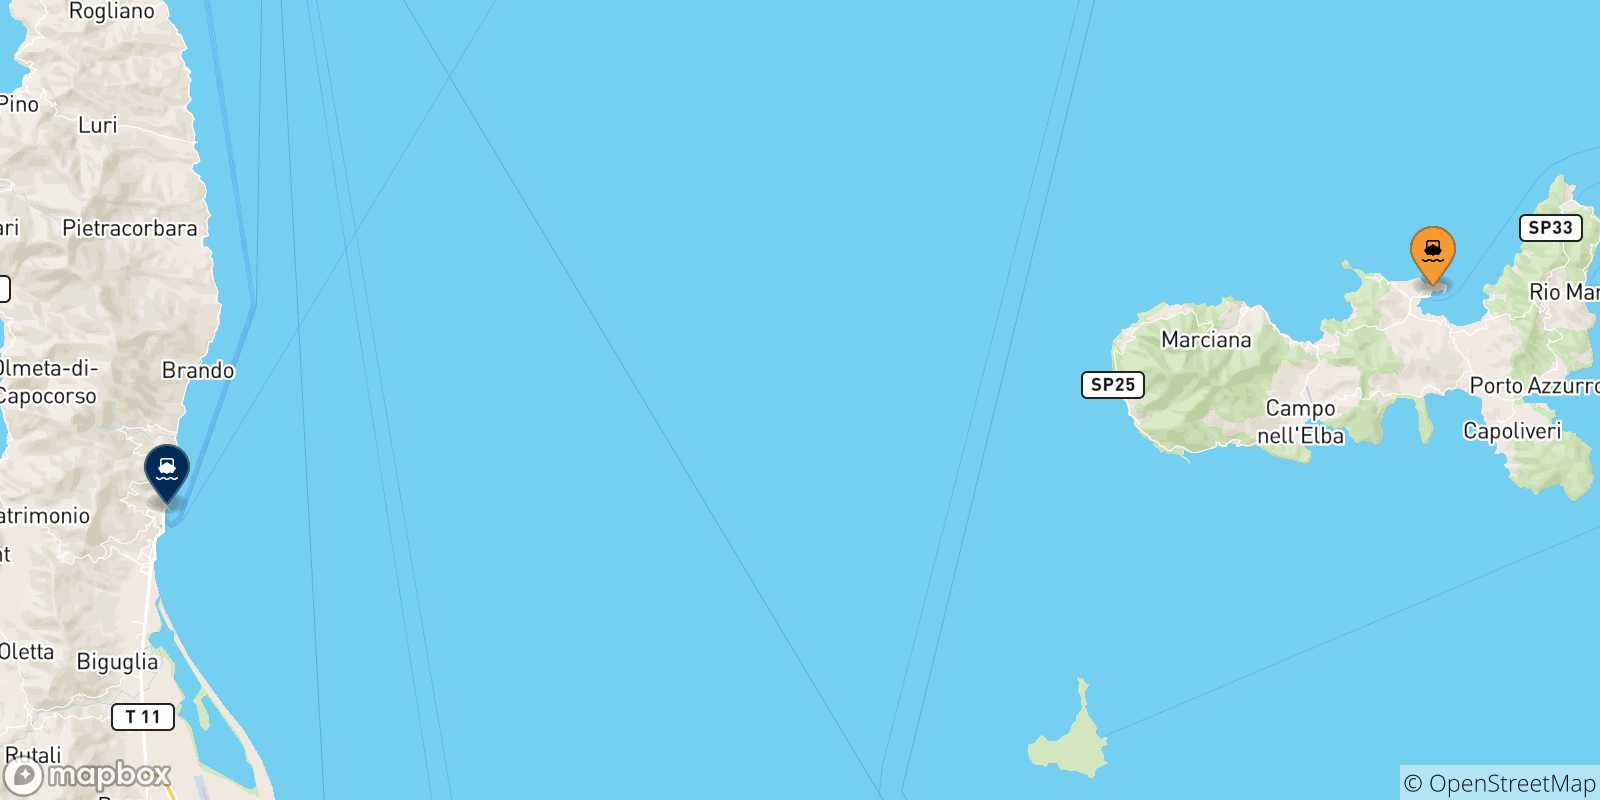 Mappa delle possibili rotte tra l'Isola D'elba e Bastia